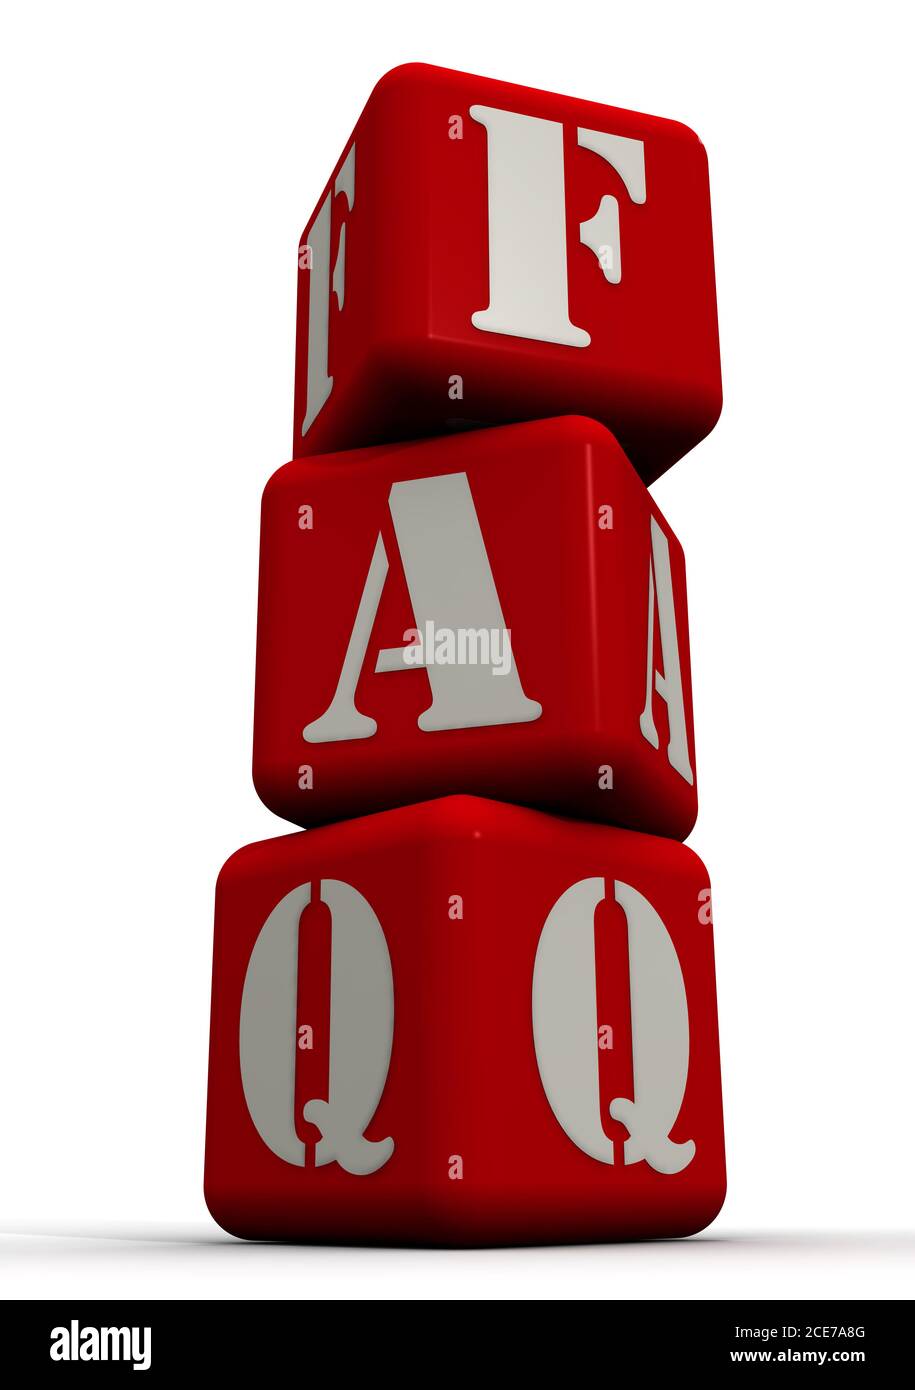 HÄUFIG GESTELLTE FRAGEN. Wort aus roten Würfeln. Das Accronym FAQ (Frequently Asked Questions) wird mit roten Würfeln auf einer weißen Oberfläche hergestellt. 3D-Illustration Stockfoto